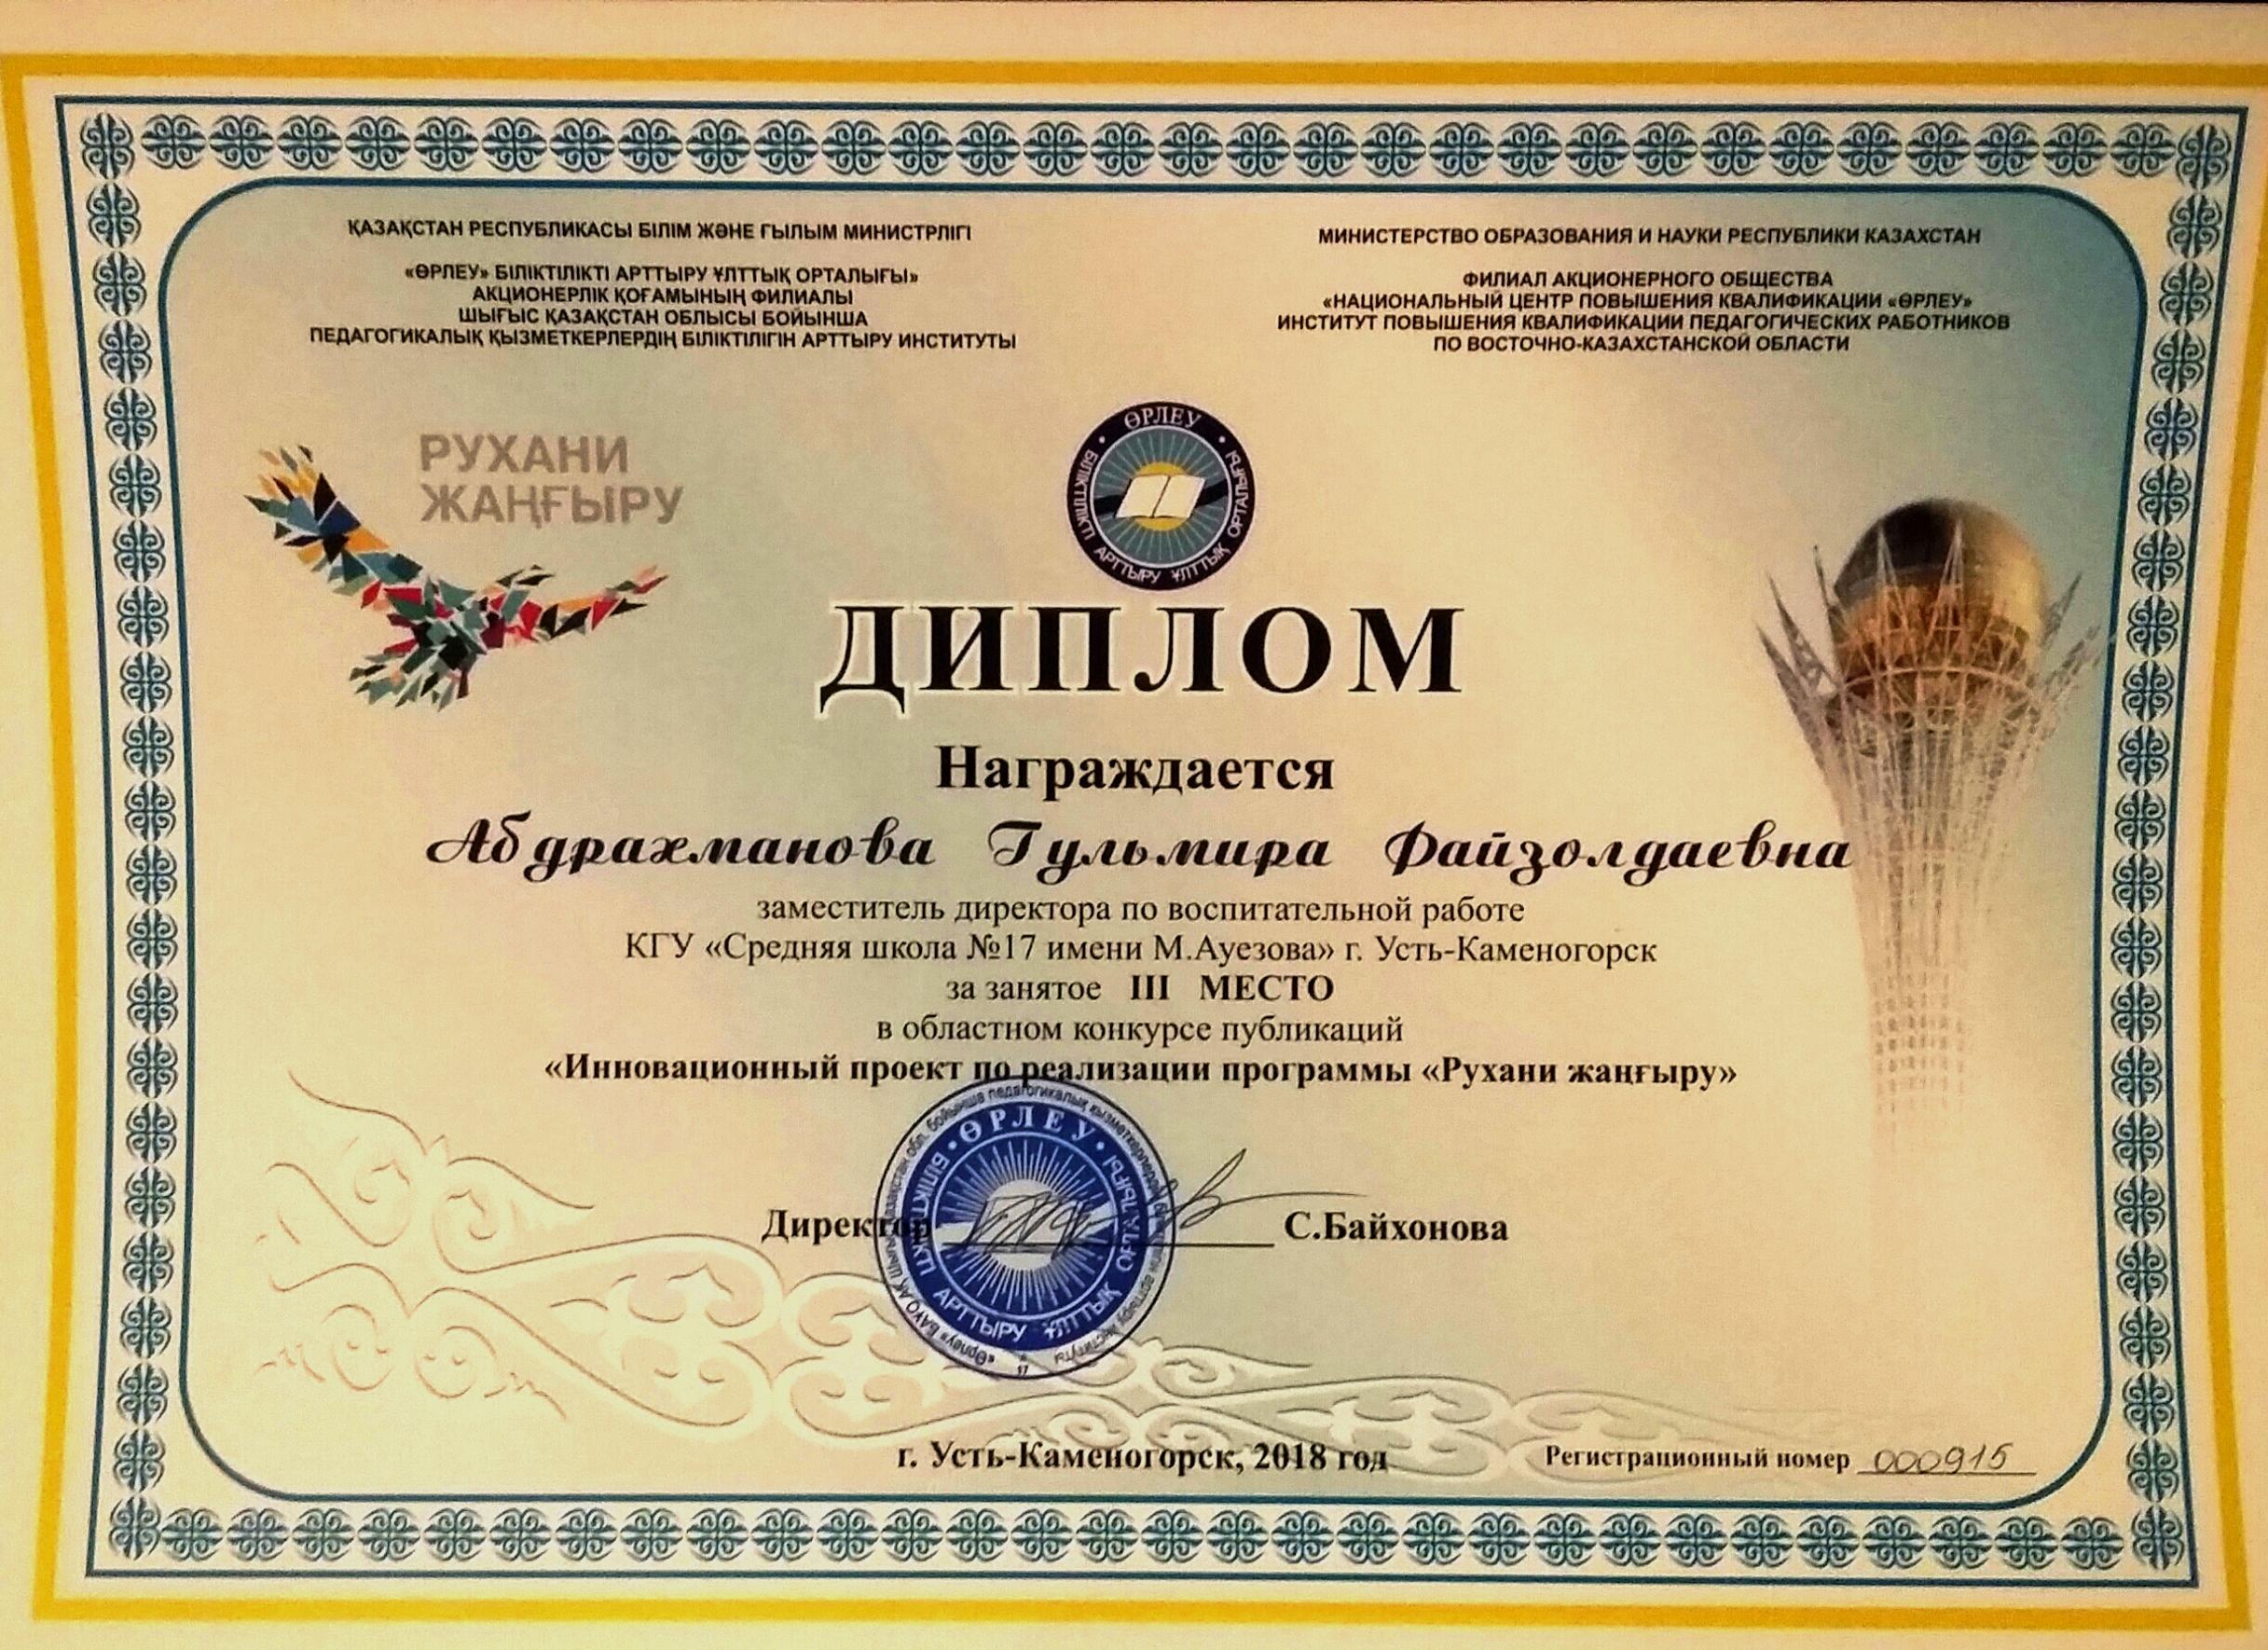 3 место в областном конкурсе публикаций "Инновационный проект по реализации программы "Рухани жаңғыру"